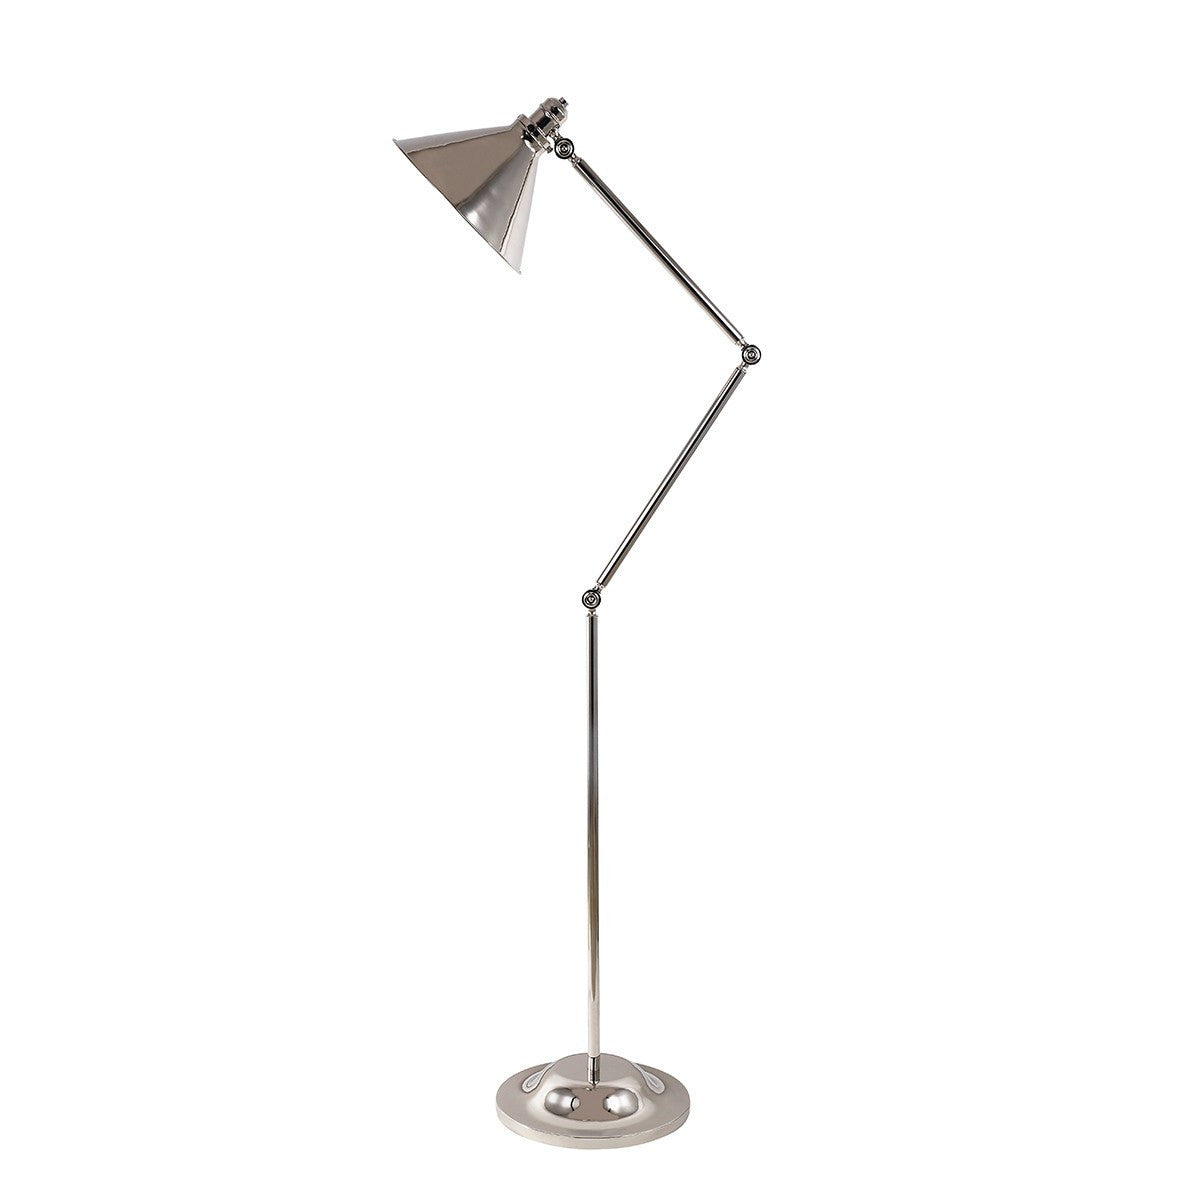 Provence Adjustable Floor Lamp - London Lighting - 2